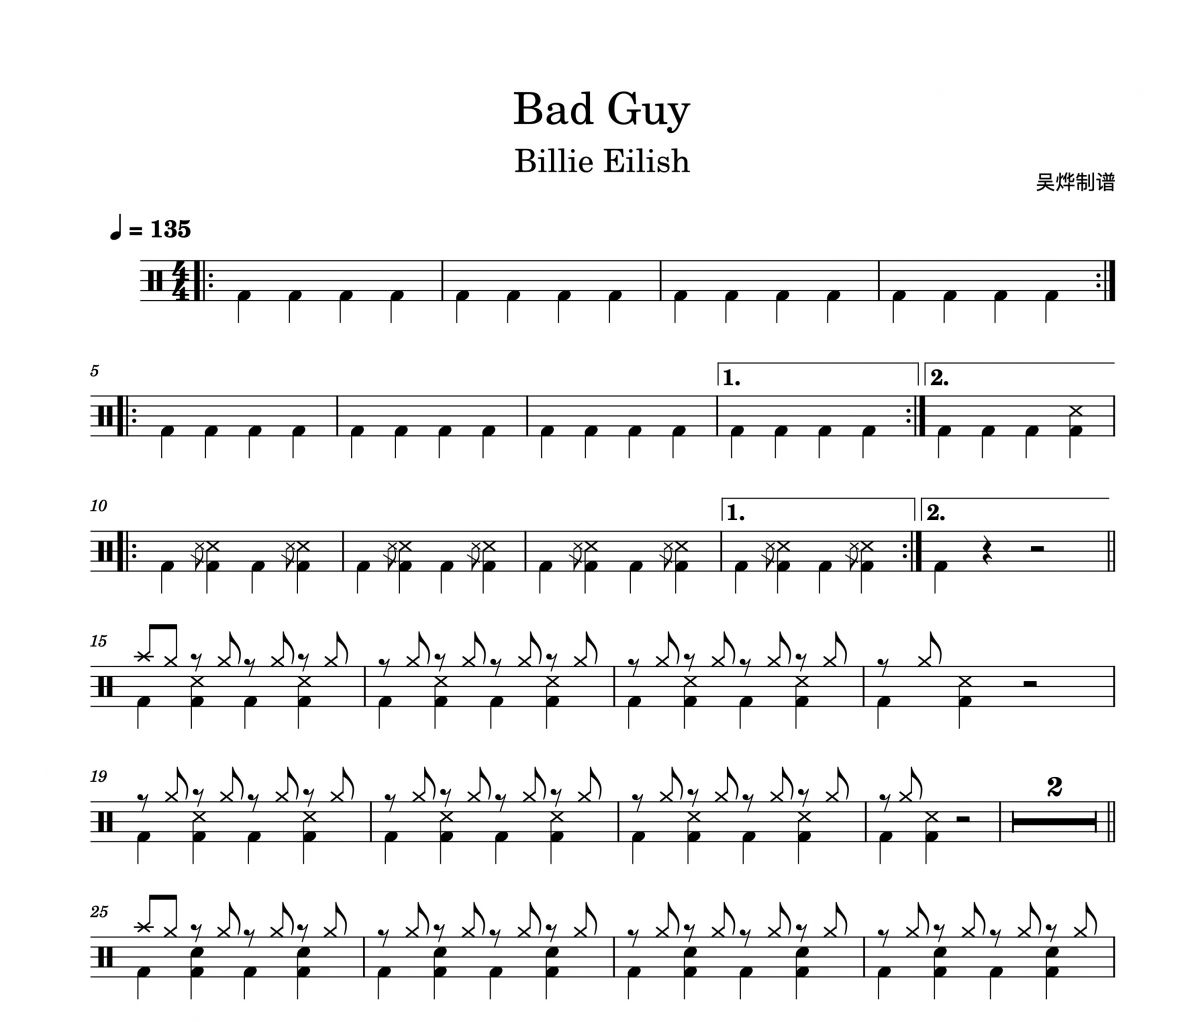 比莉·艾利什-Bad Guy架子鼓谱爵士鼓曲谱